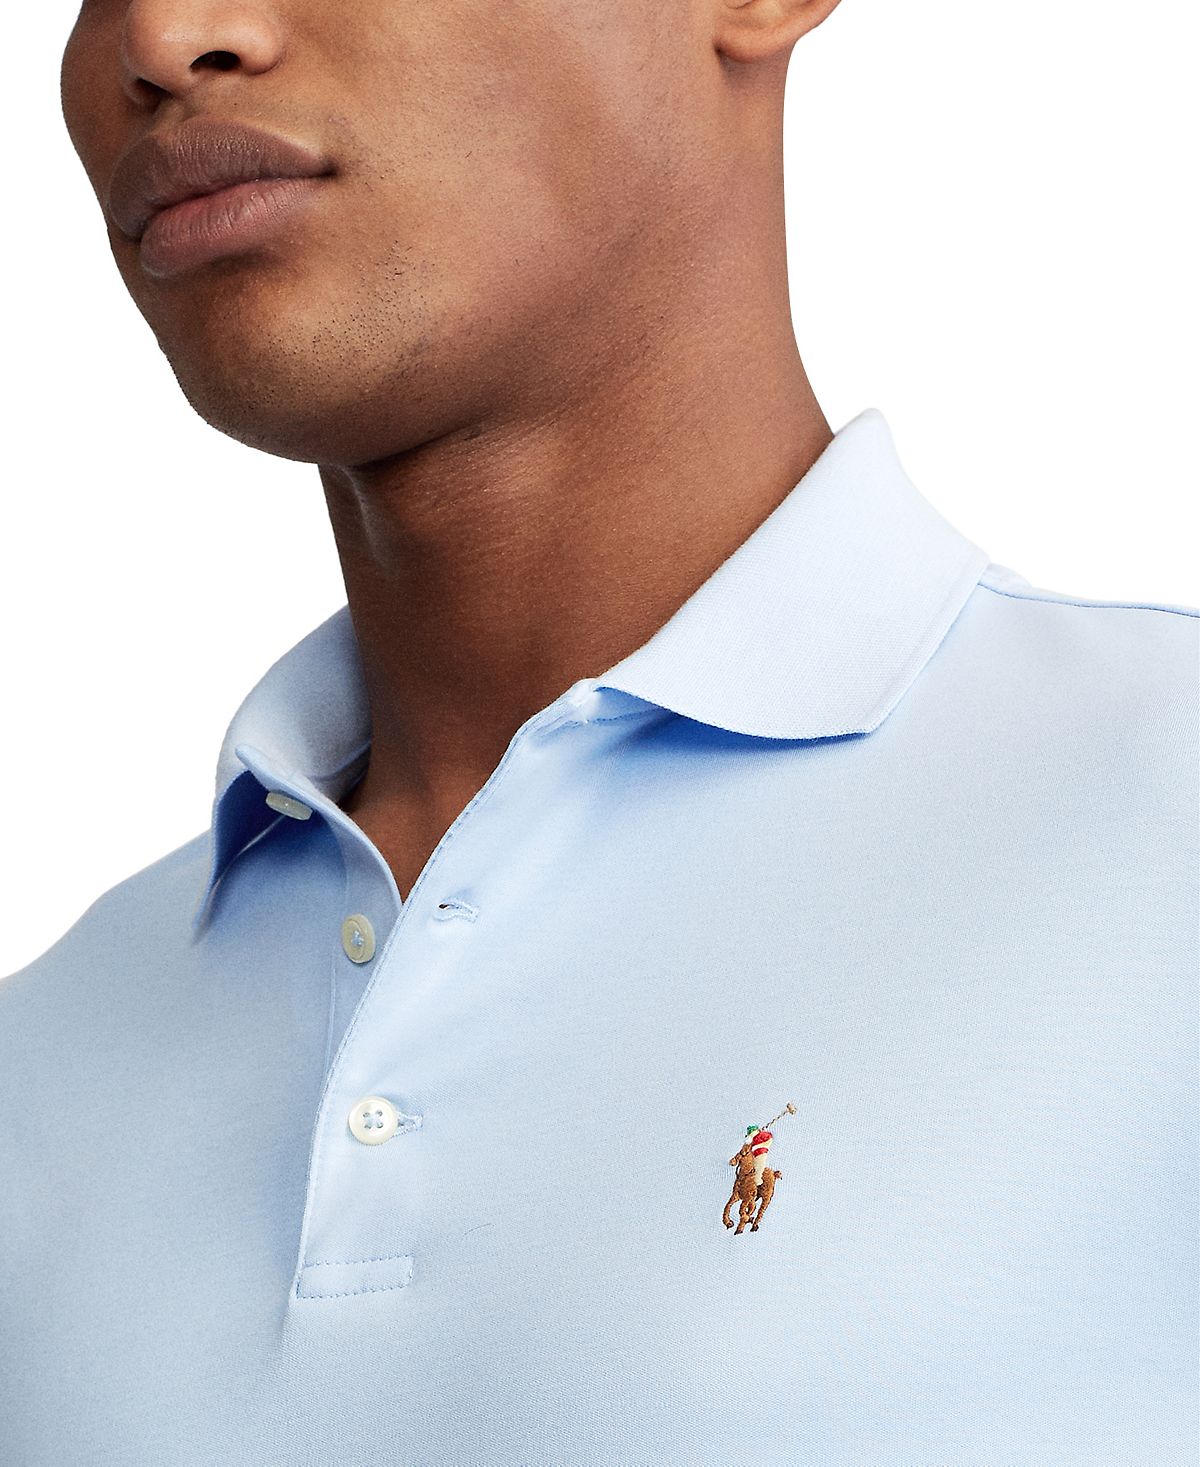 Мужская рубашка-поло slim fit из хлопка на заказ Polo Ralph Lauren, мульти  – заказать из-за границы с доставкой в «CDEK.Shopping»